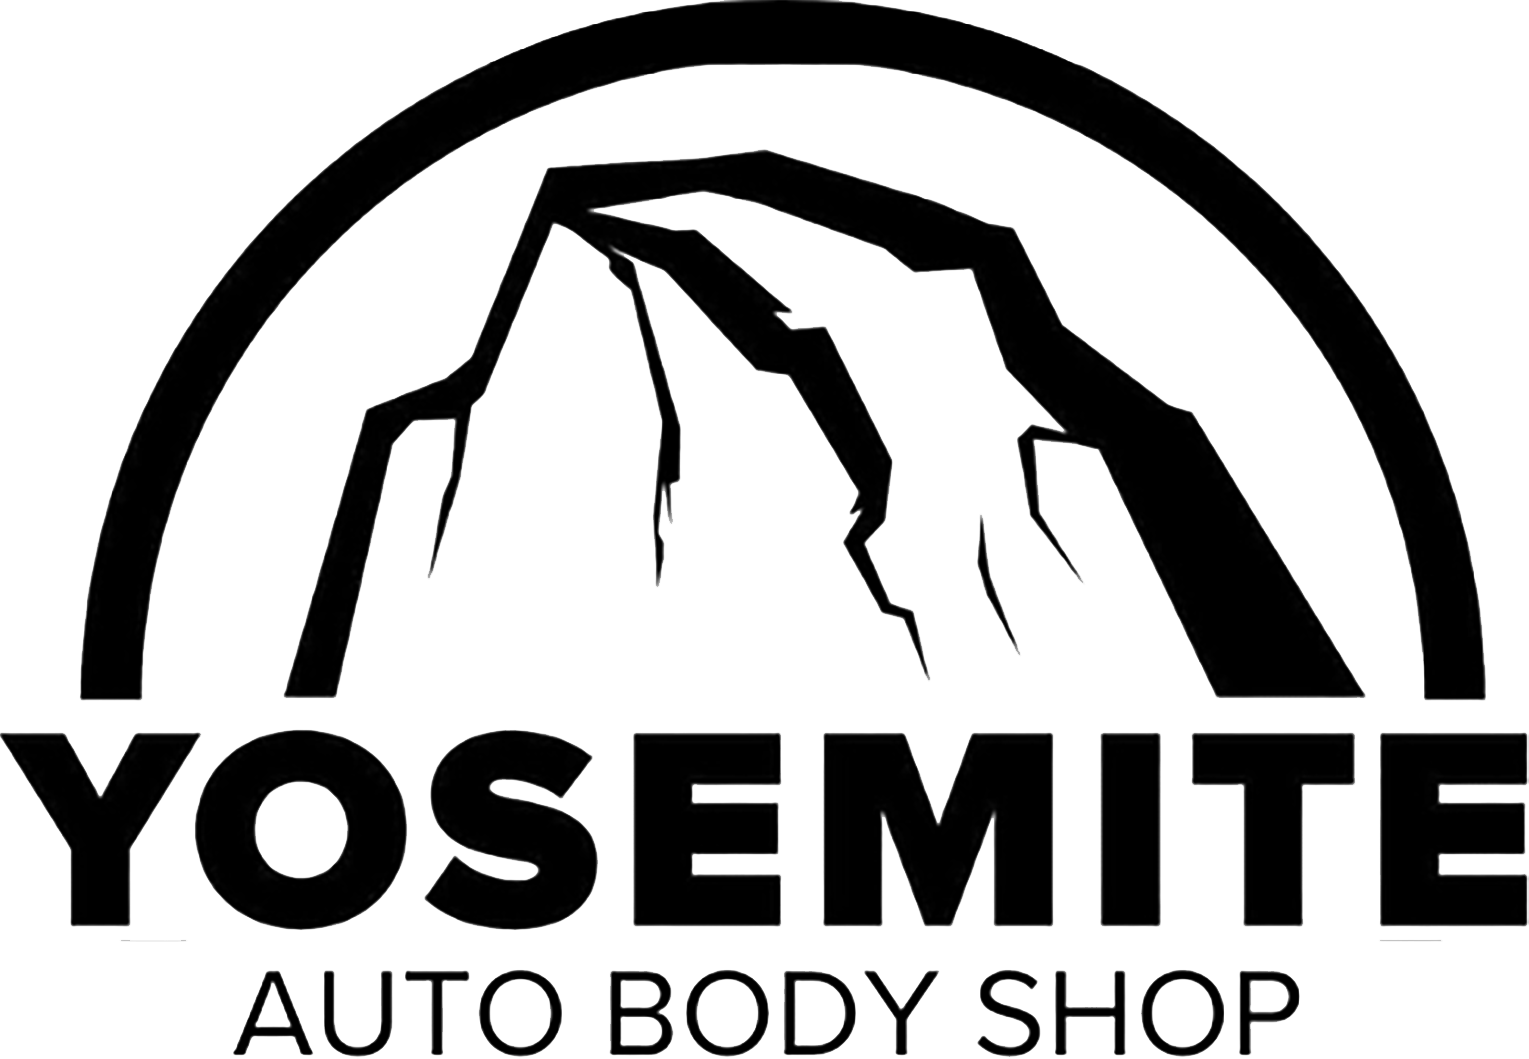 Yosemite Auto Body Shop